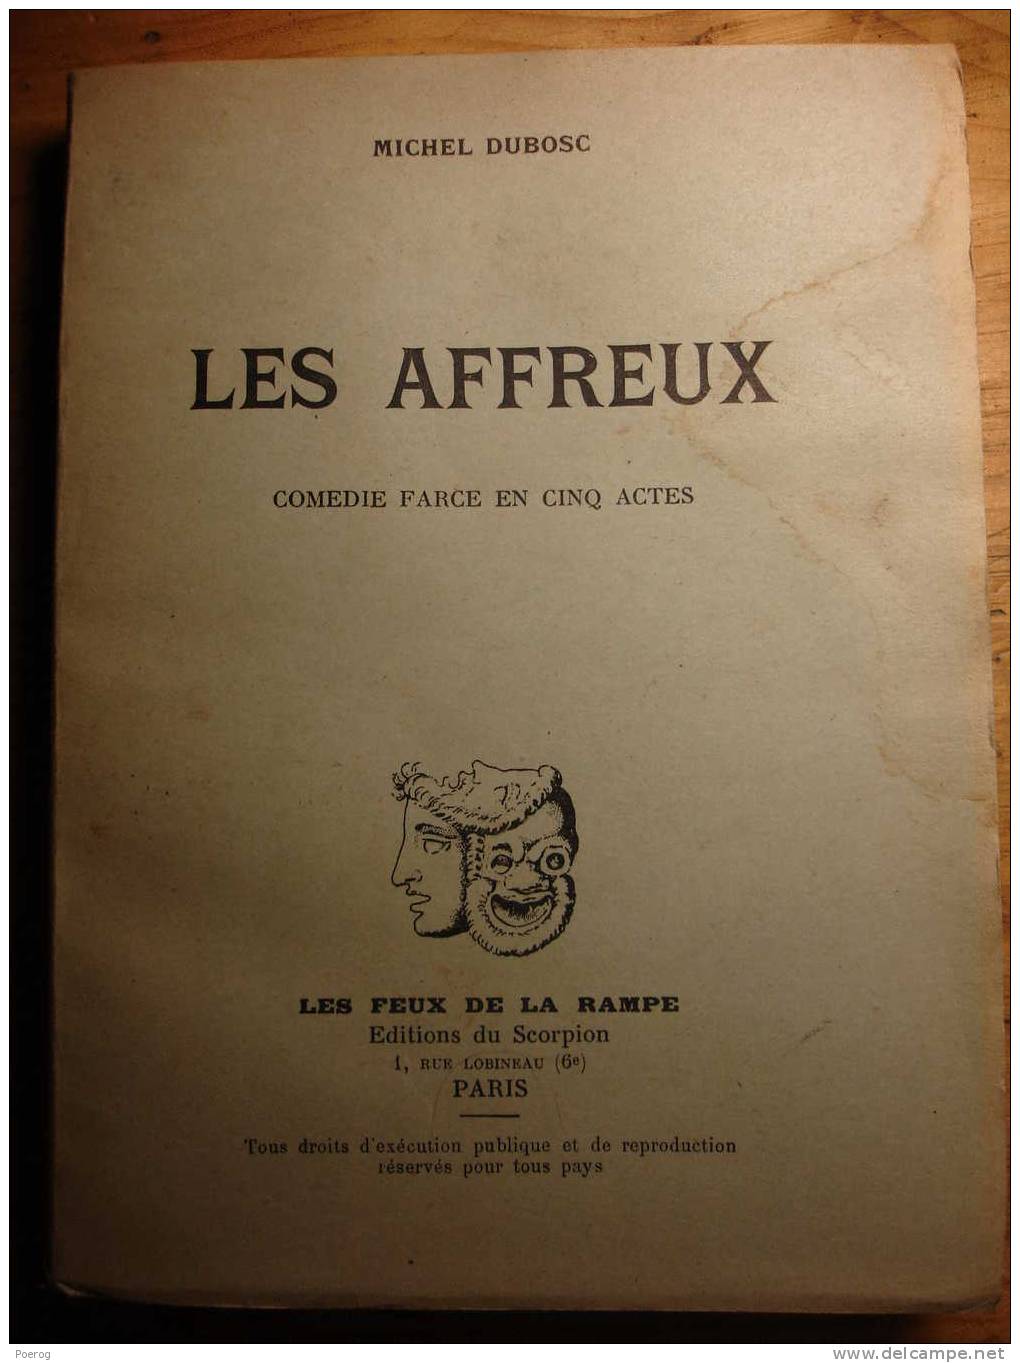 MICHEL DUBOSC - LES AFFREUX - Comédie Farce En 5 Actes - 1958 - LES EDITIONS DU SCORPION - LES FEUX DE LA RAMPE - French Authors